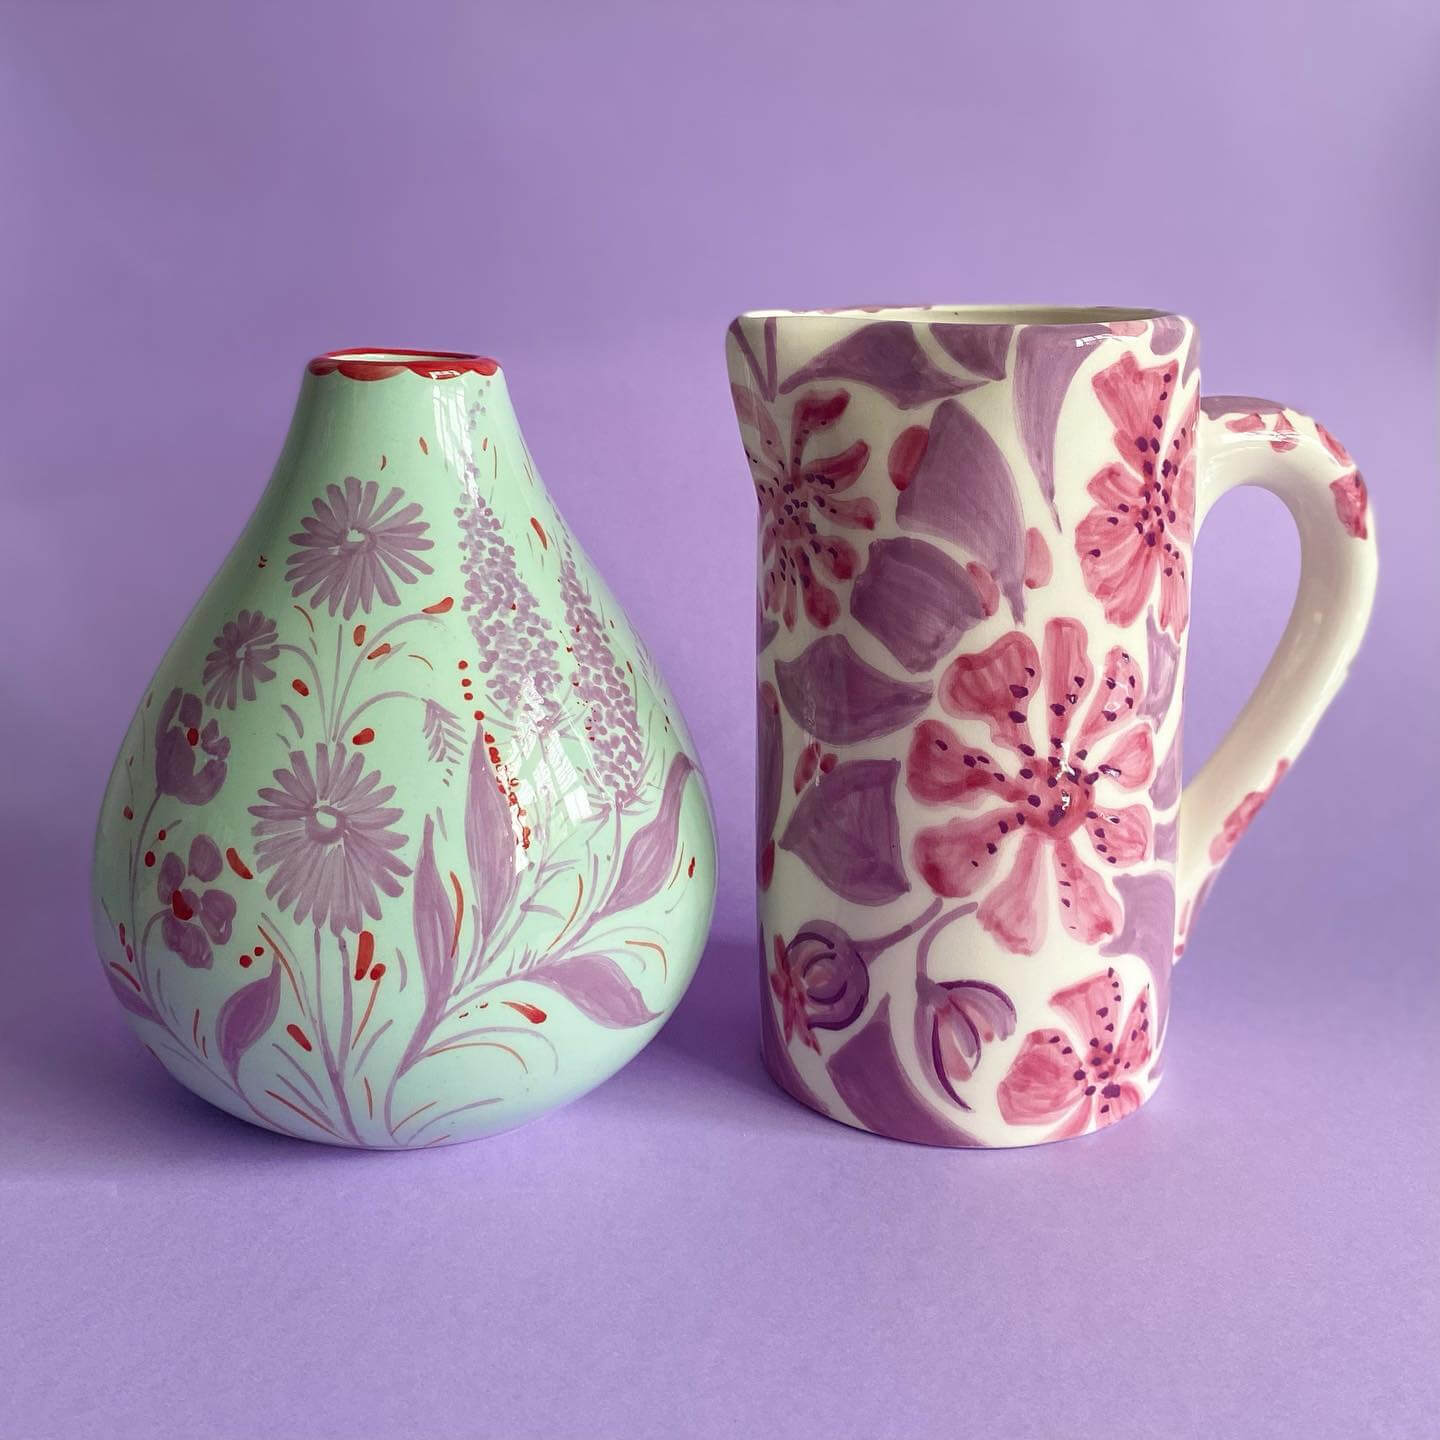 https://studio-wallflower.com/wp-content/uploads/2022/05/vaisselle-painted-vases.jpg